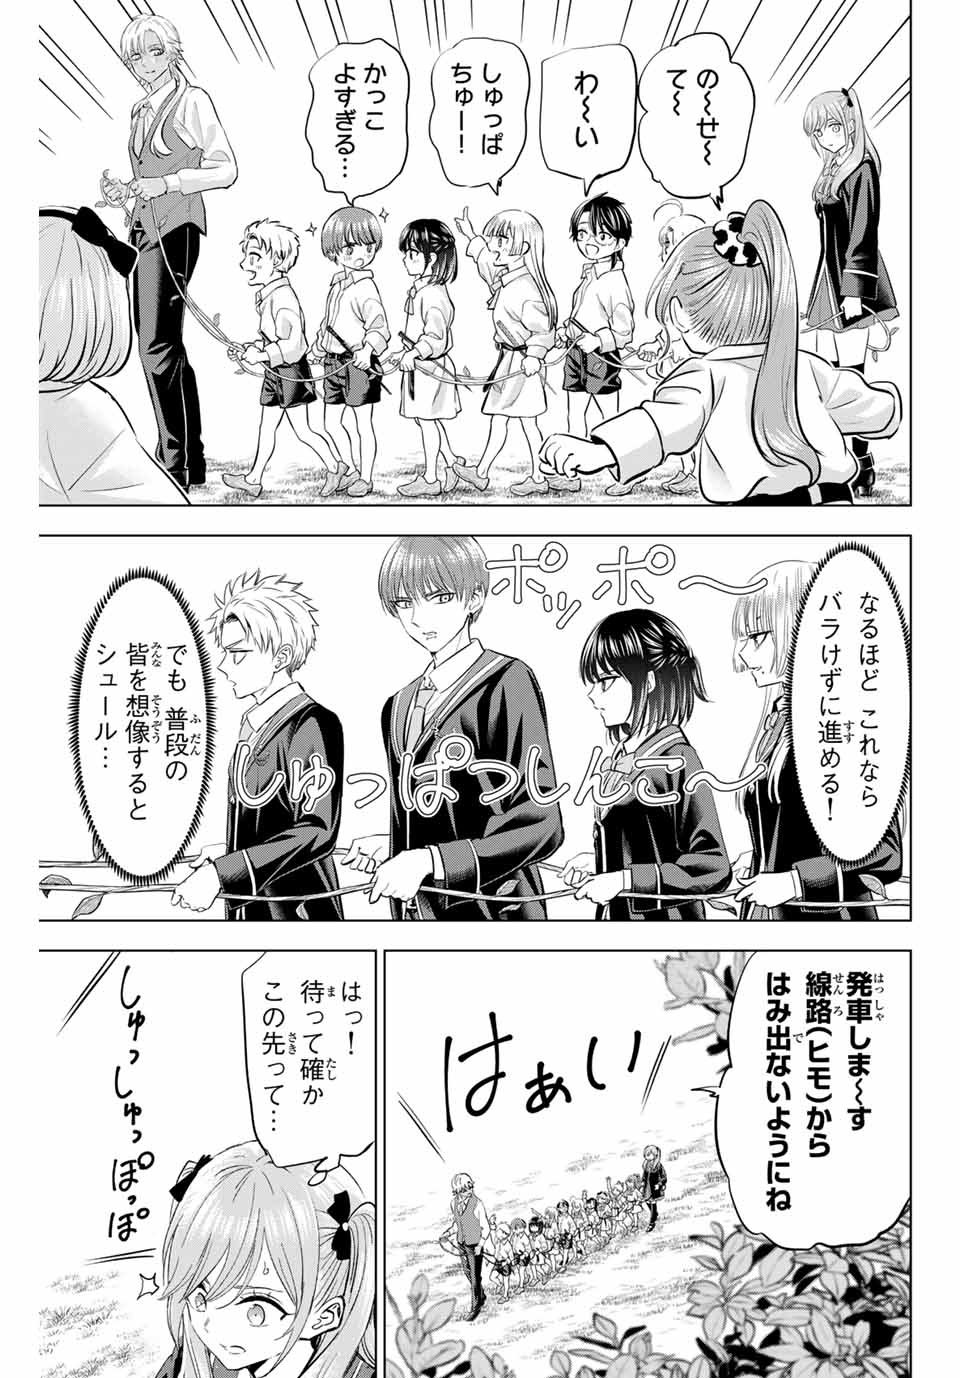 Kuroneko to Majo no Kyoushitsu - Chapter 63 - Page 9